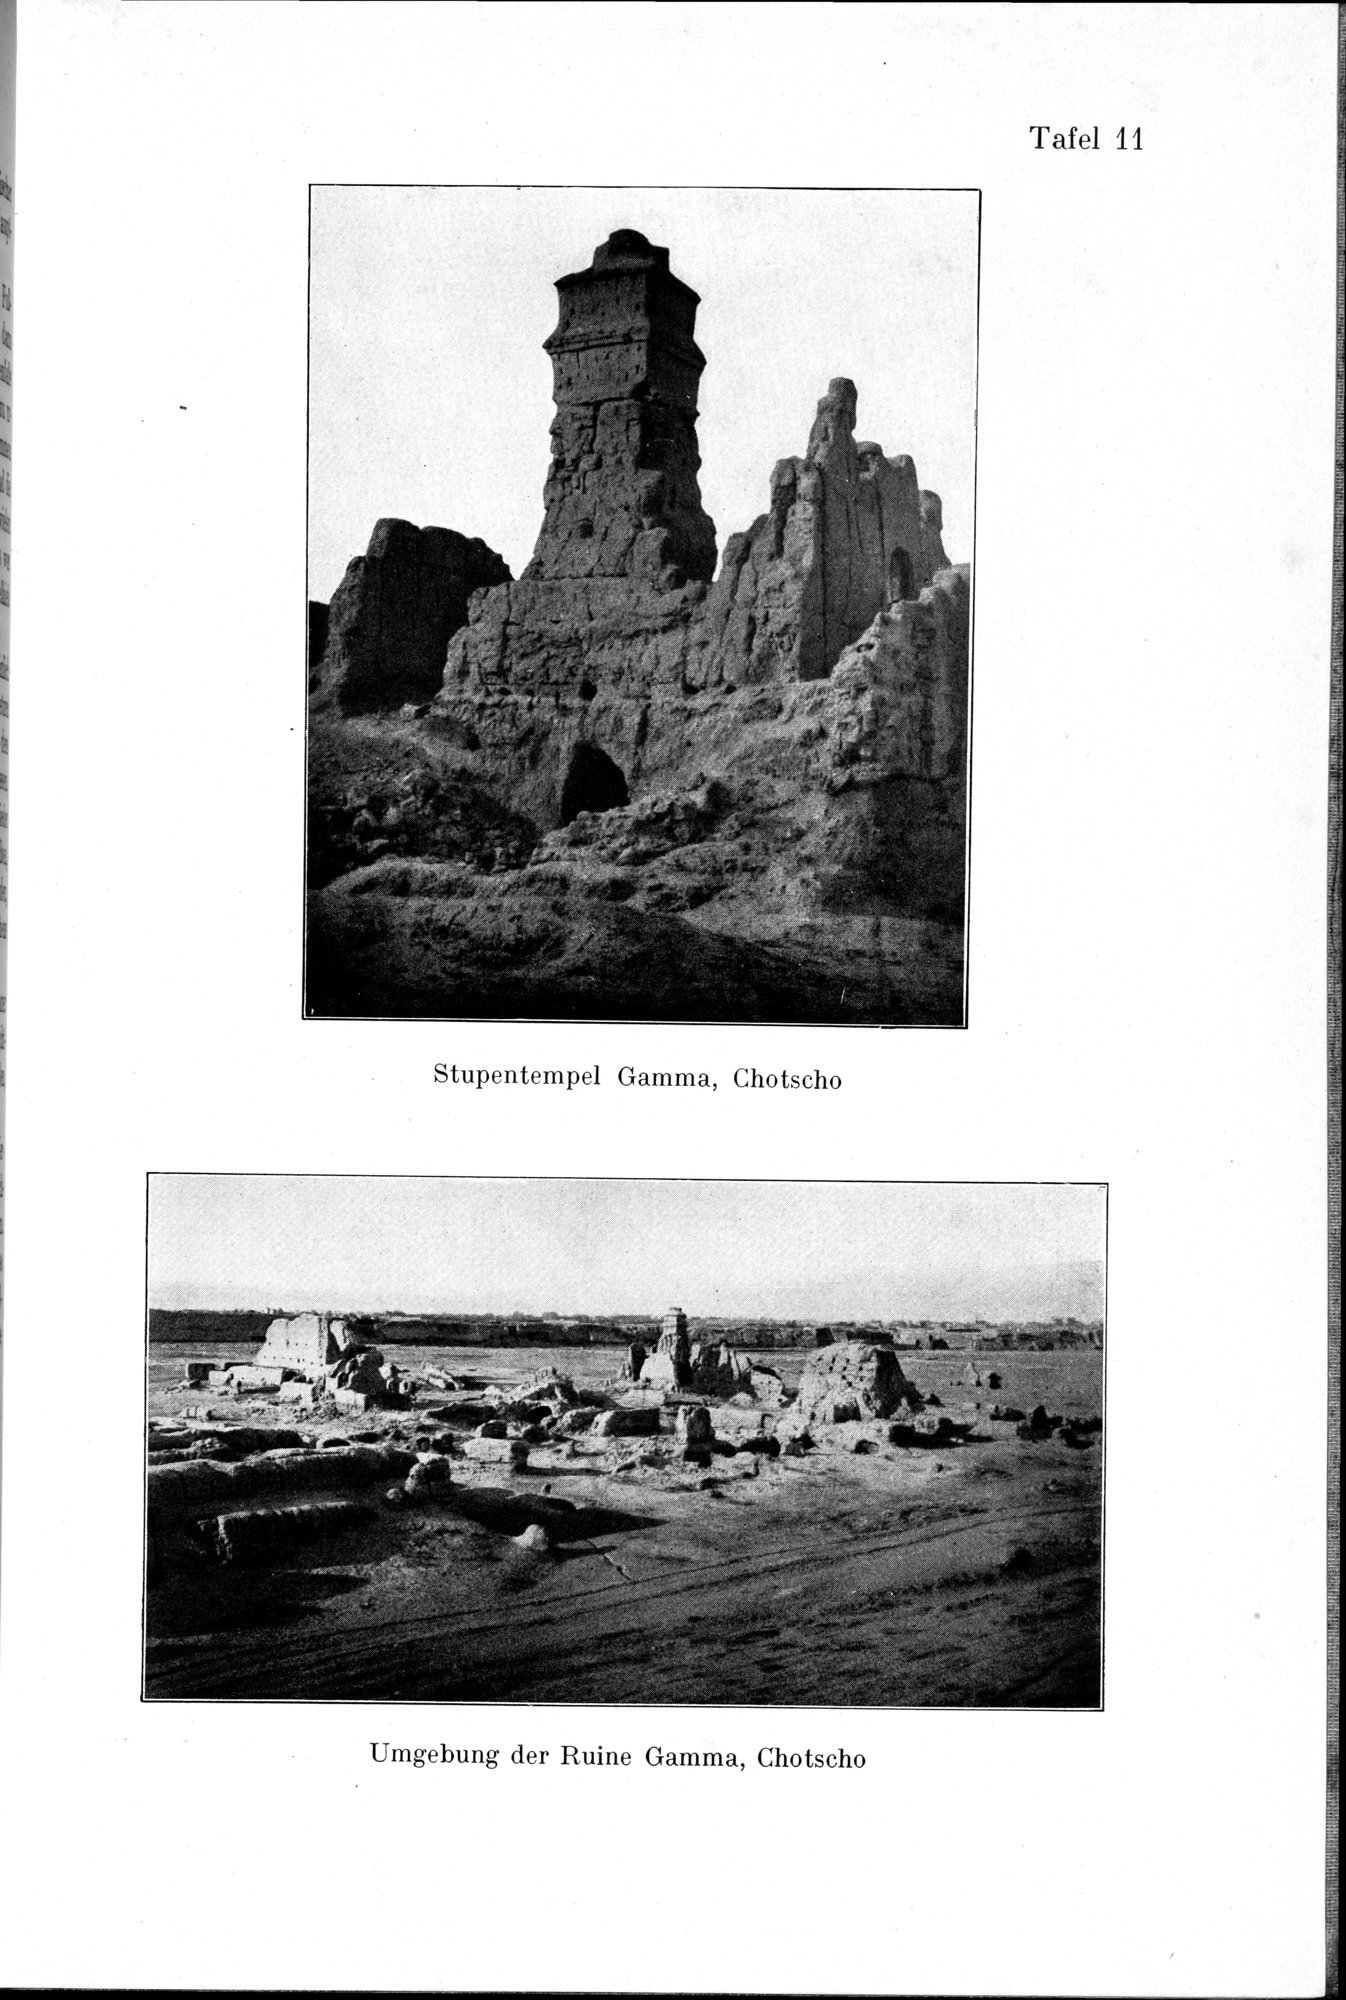 Auf Hellas Spuren in Ostturkistan : vol.1 / Page 75 (Grayscale High Resolution Image)